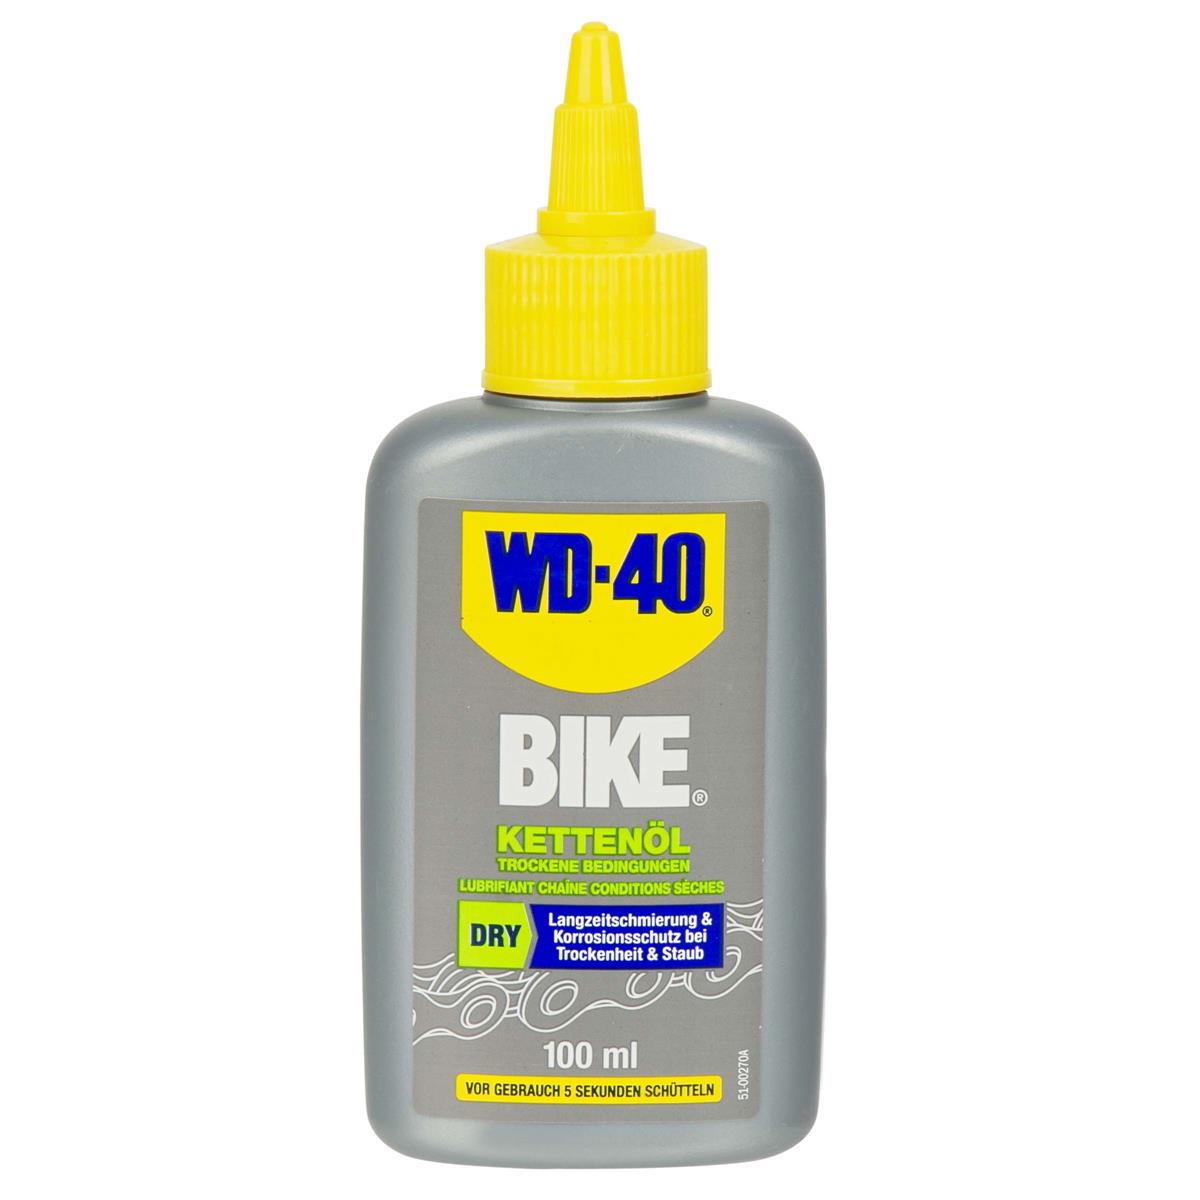 WD-40 Lubrifiant Chaînes Bike Dry, 100 ml